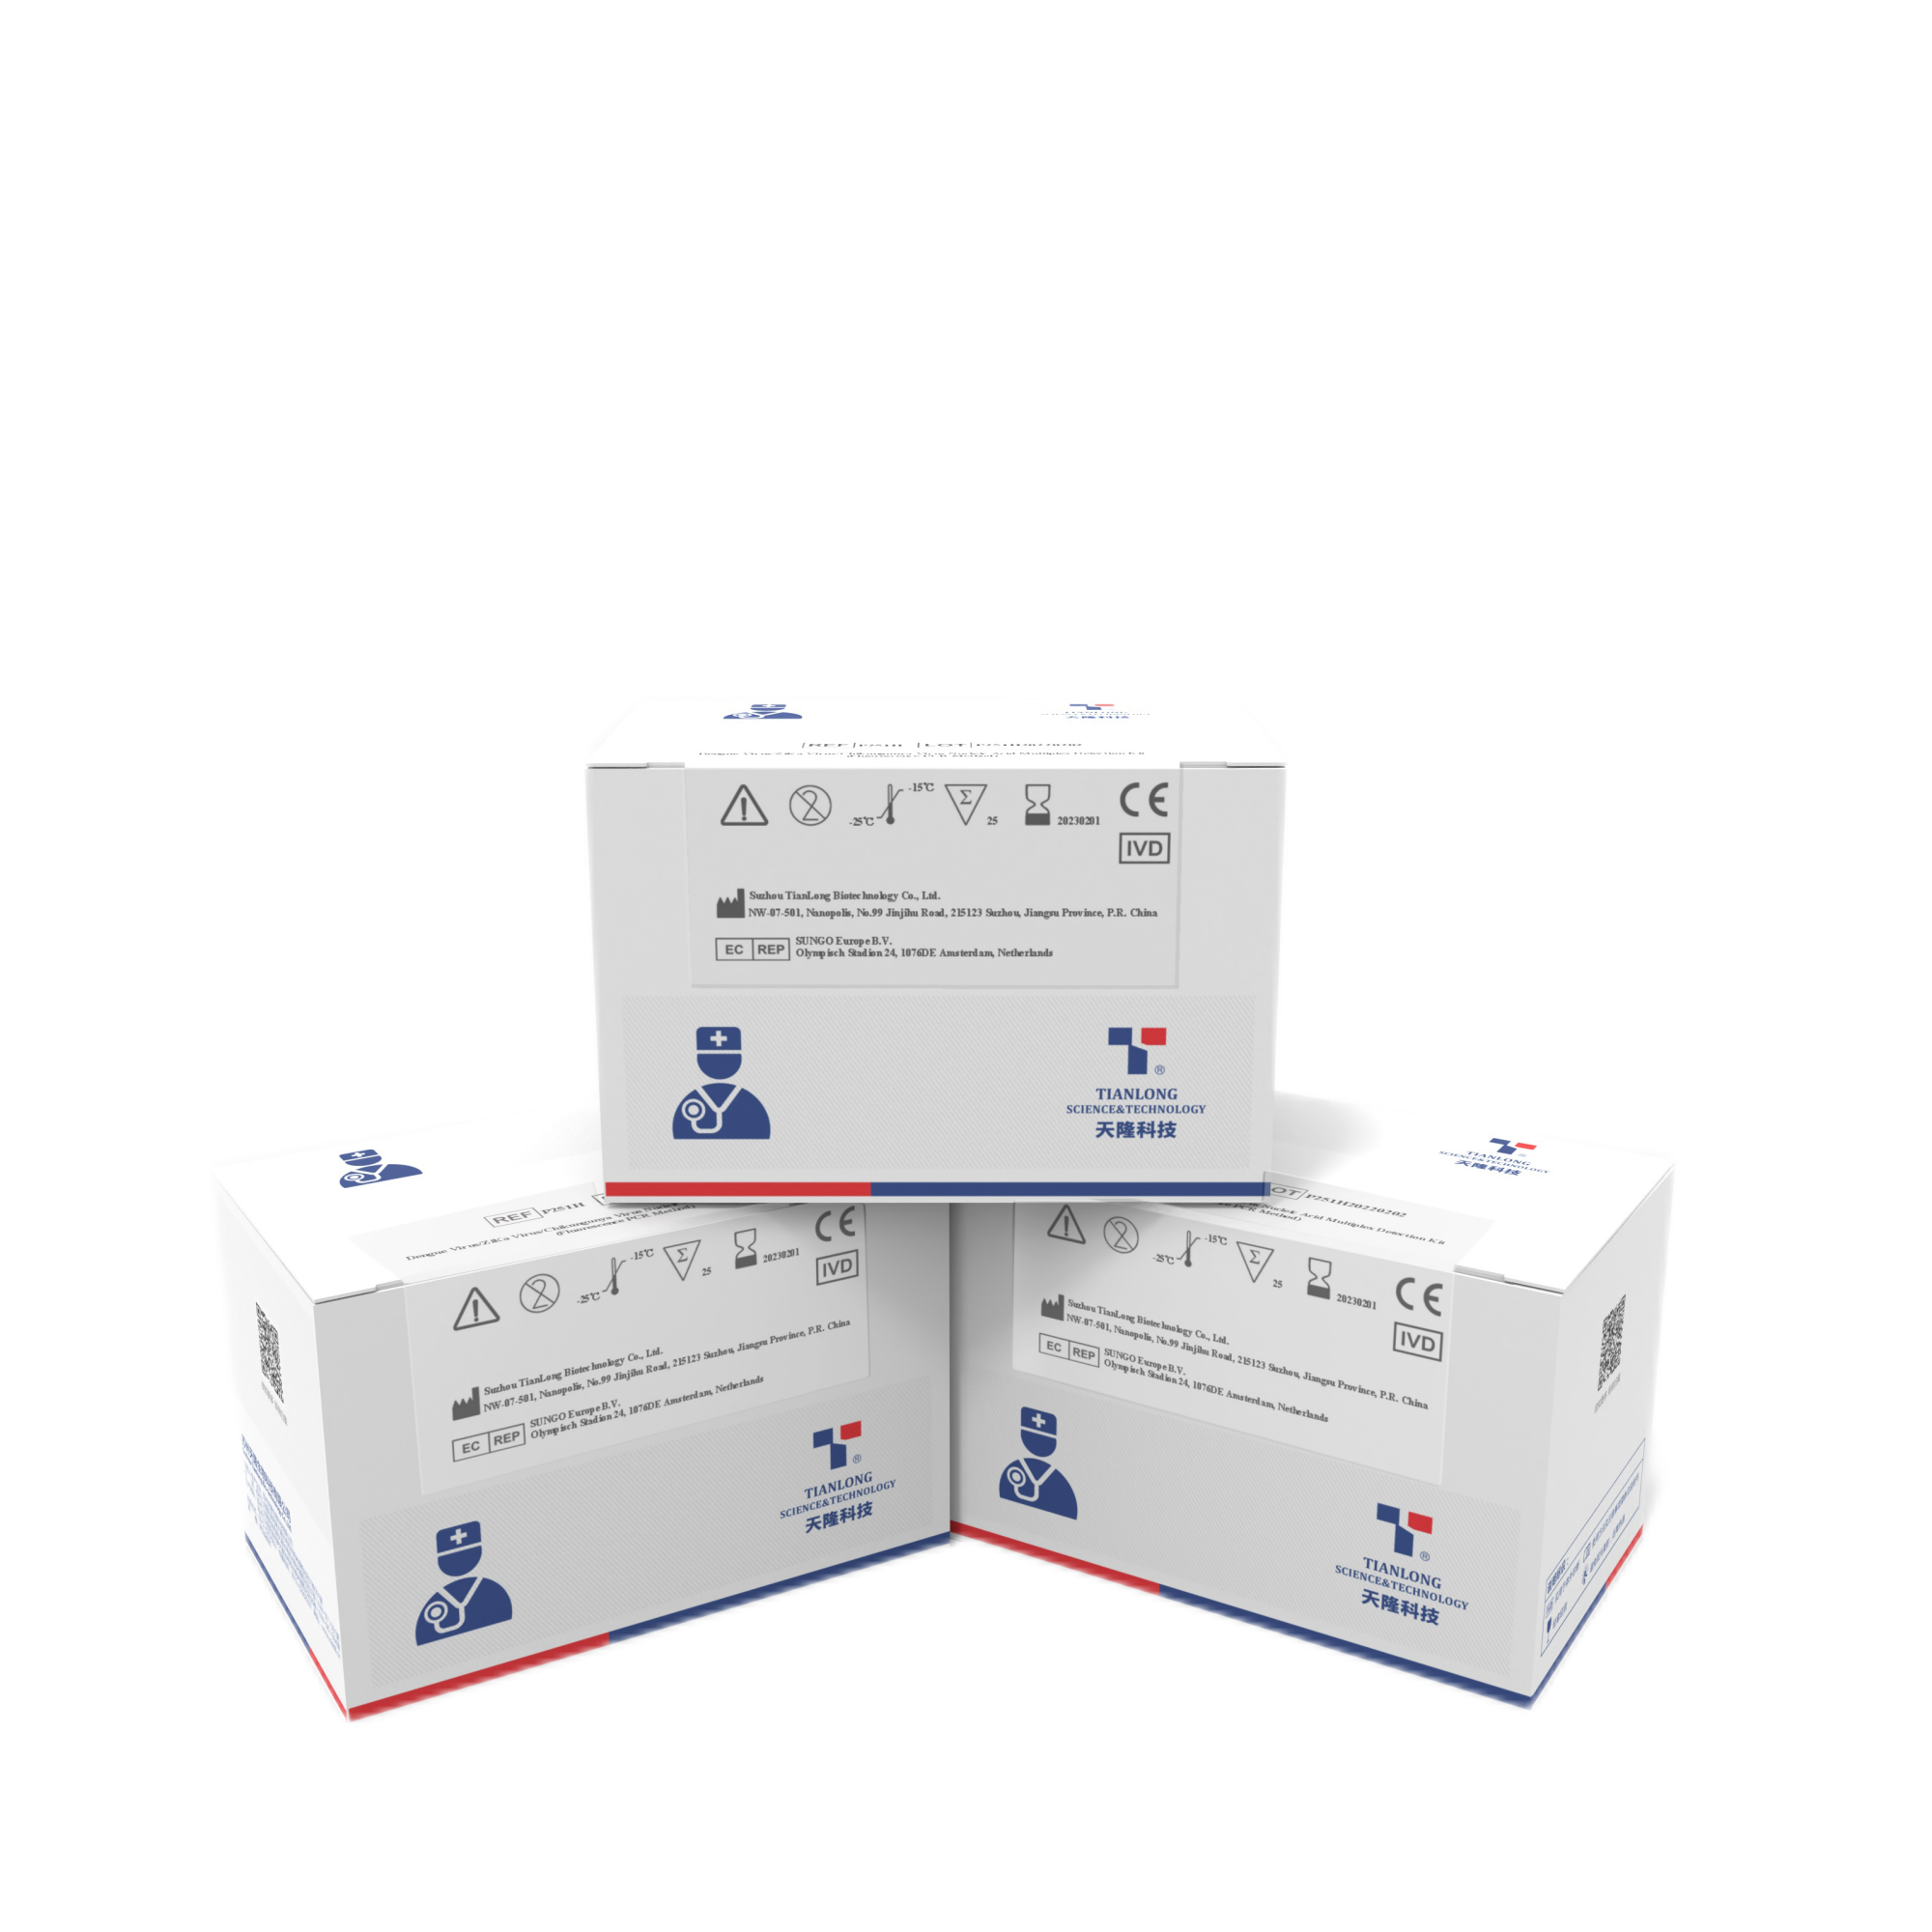 Acheter P251H - Kit de détection multiplex d'acides nucléiques du virus de la dengue/du virus ZiKa/du virus du chikungunya,P251H - Kit de détection multiplex d'acides nucléiques du virus de la dengue/du virus ZiKa/du virus du chikungunya Prix,P251H - Kit de détection multiplex d'acides nucléiques du virus de la dengue/du virus ZiKa/du virus du chikungunya Marques,P251H - Kit de détection multiplex d'acides nucléiques du virus de la dengue/du virus ZiKa/du virus du chikungunya Fabricant,P251H - Kit de détection multiplex d'acides nucléiques du virus de la dengue/du virus ZiKa/du virus du chikungunya Quotes,P251H - Kit de détection multiplex d'acides nucléiques du virus de la dengue/du virus ZiKa/du virus du chikungunya Société,